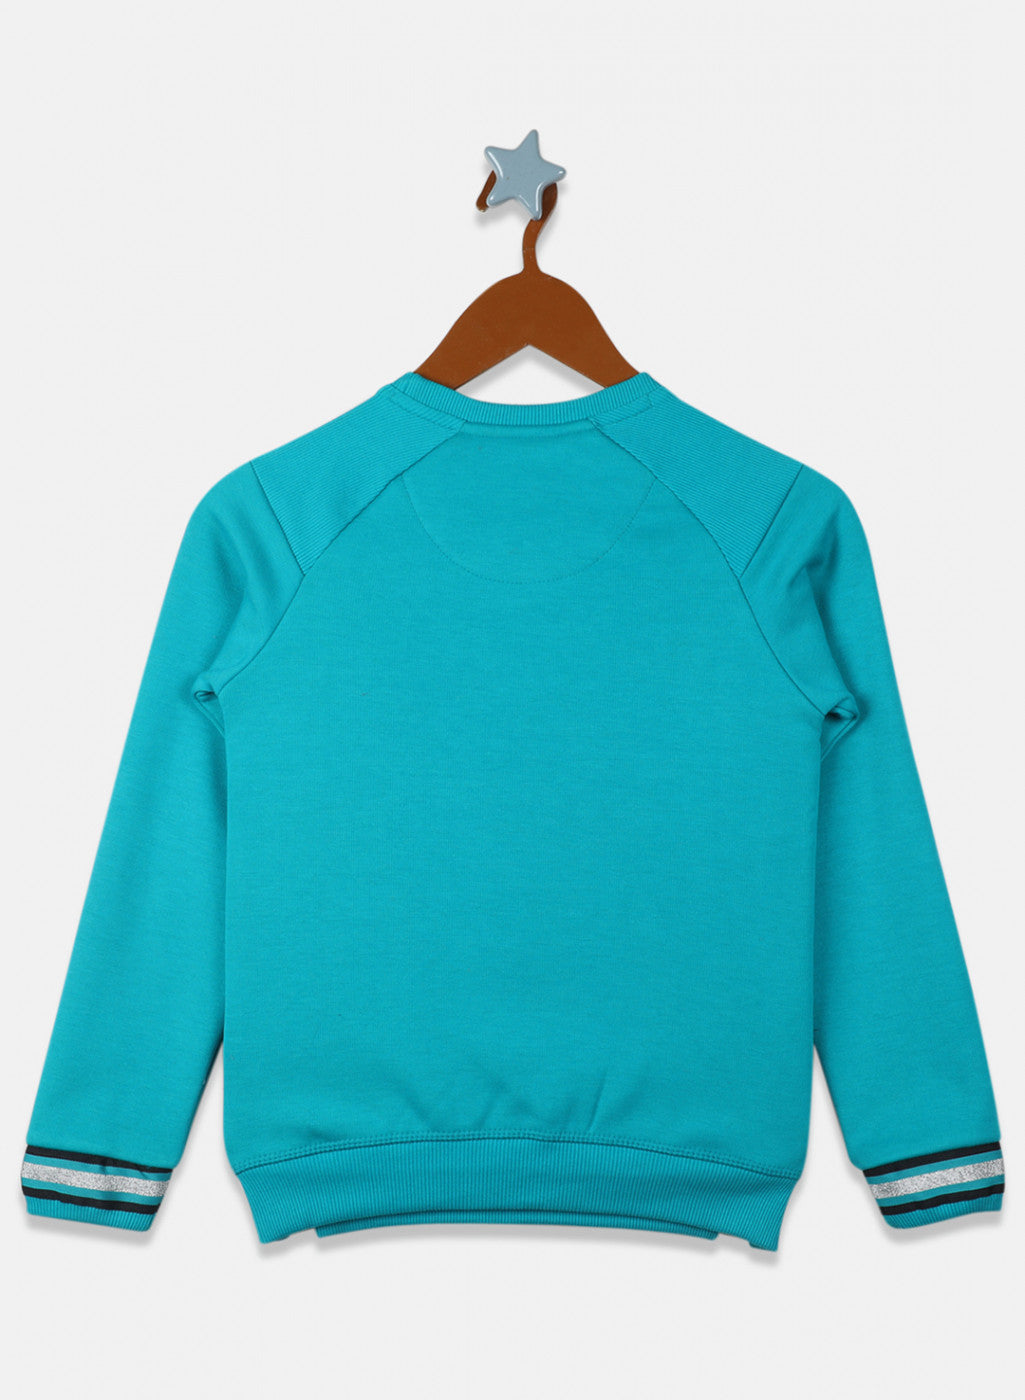 Girls Teal Blue Printed Sweatshirt